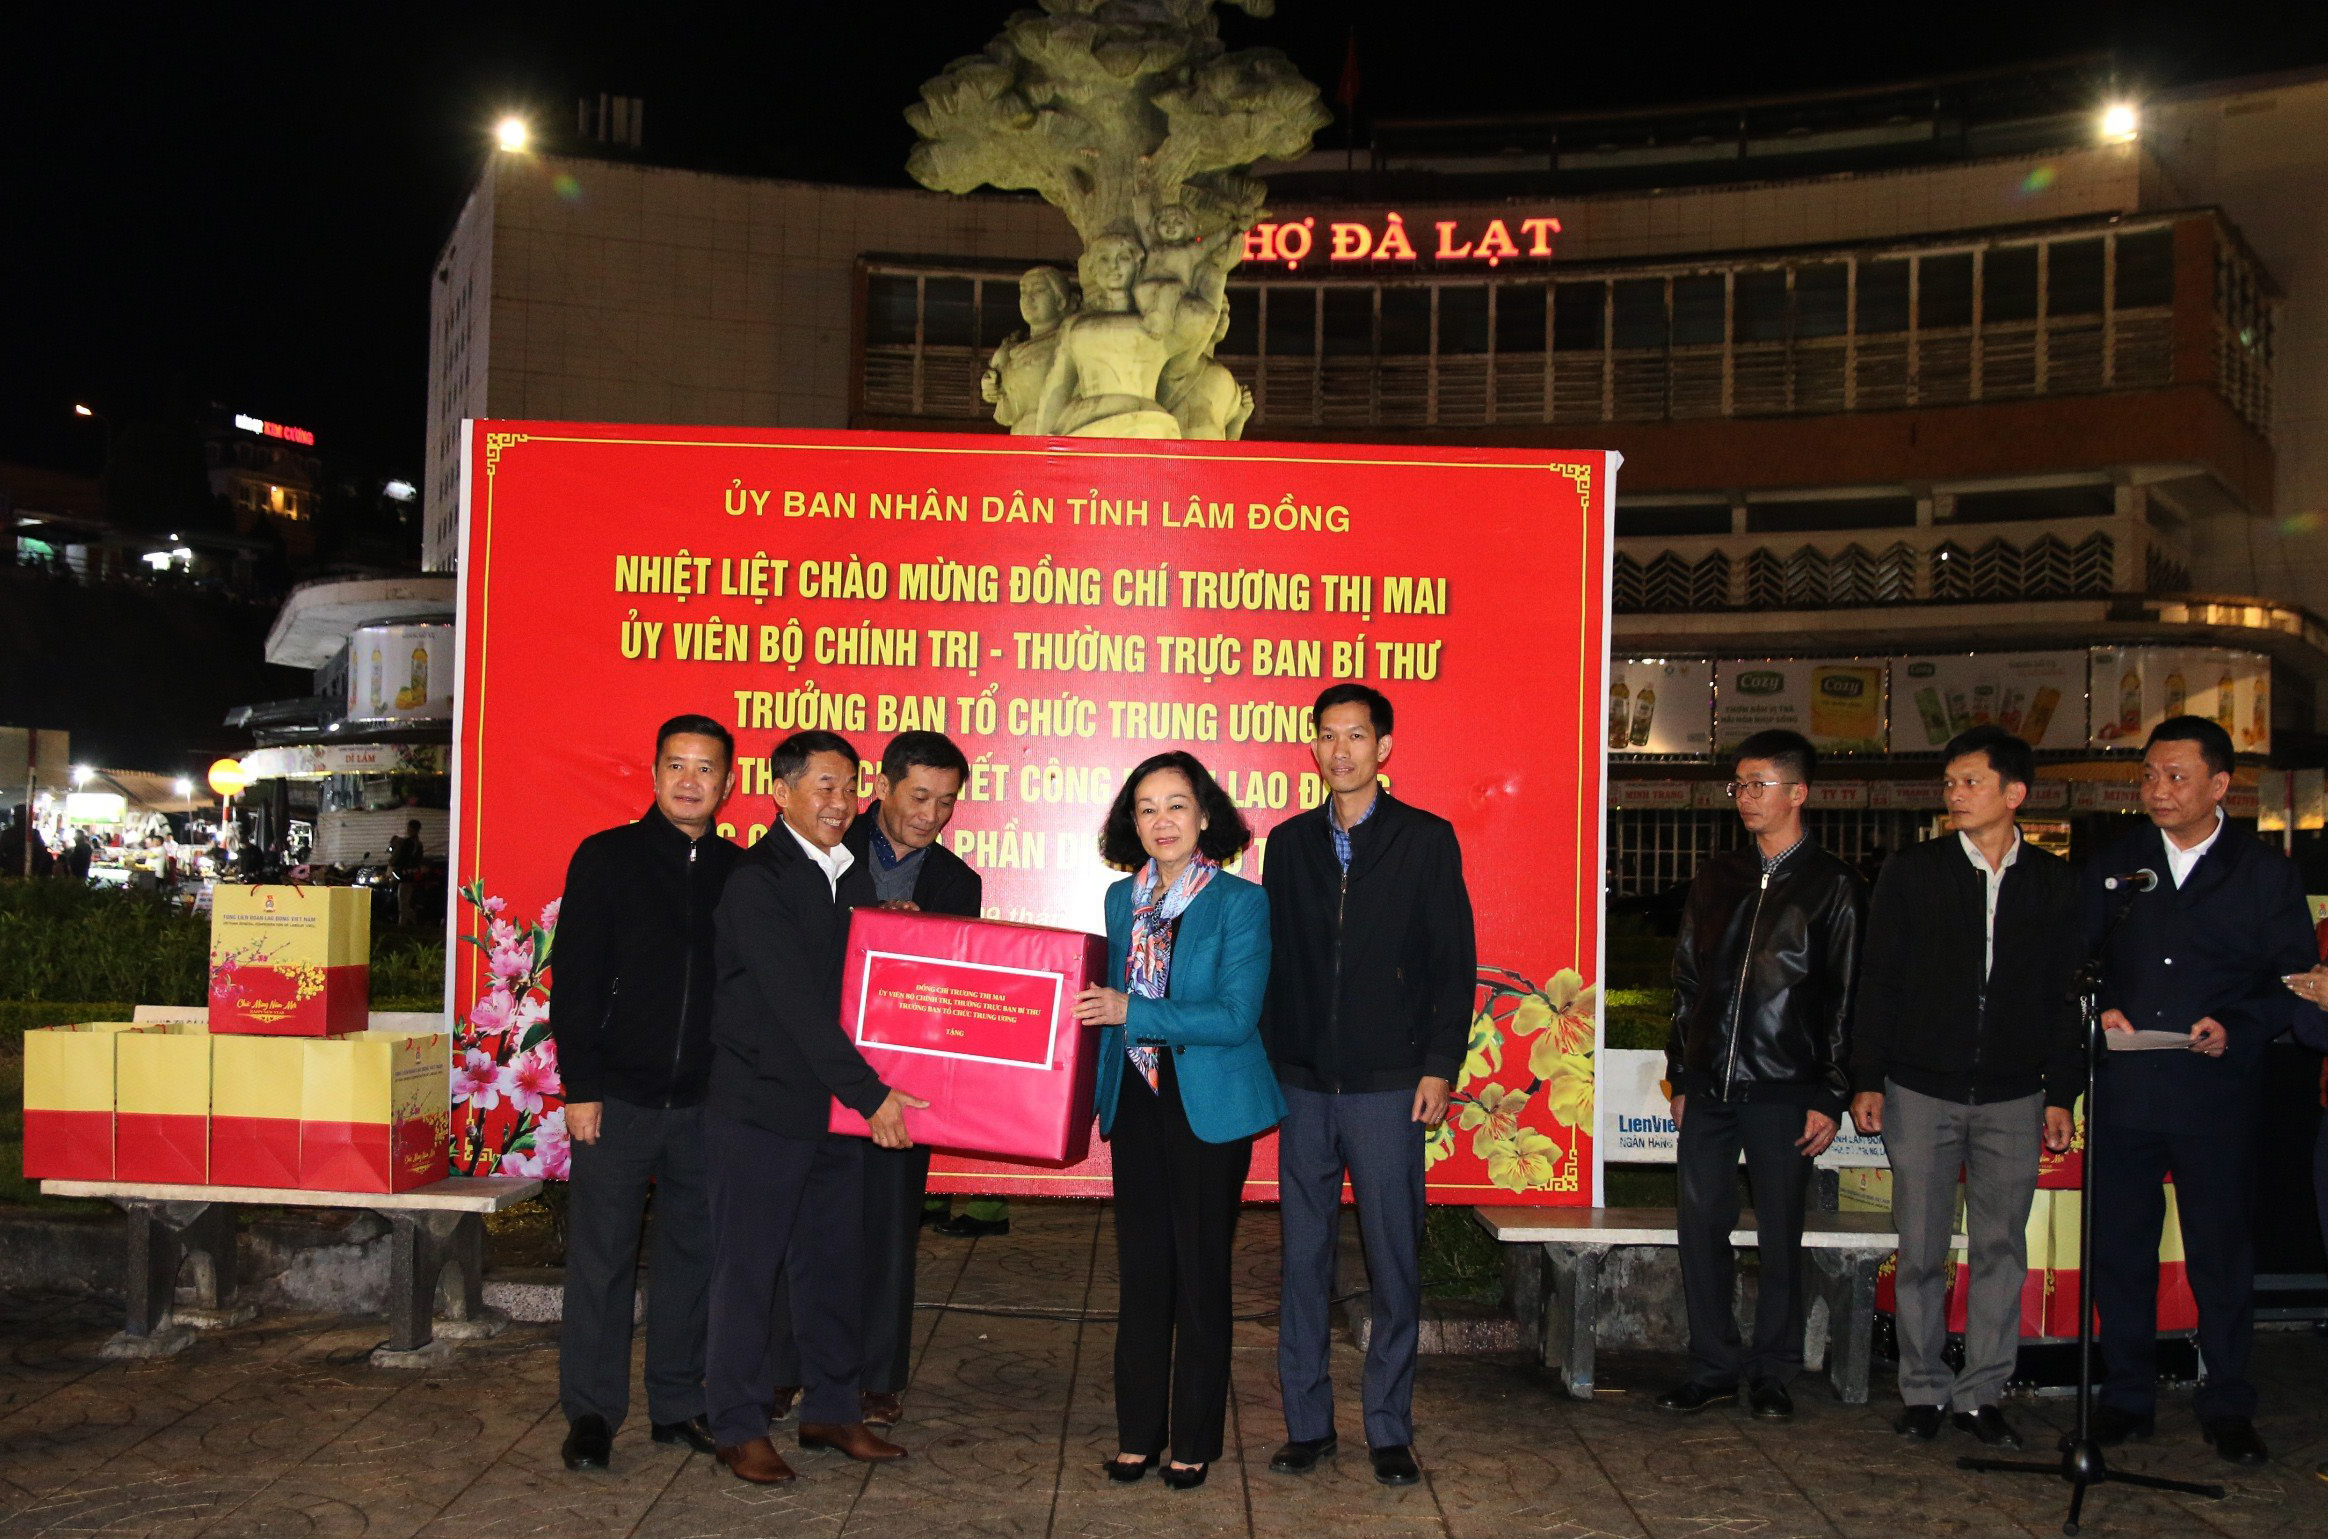 Thường trực Ban Bí thư, Trưởng Ban Tổ chức Trung ương tặng quà Tết cho hàng trăm công nhân tại Đà Lạt- Ảnh 3.